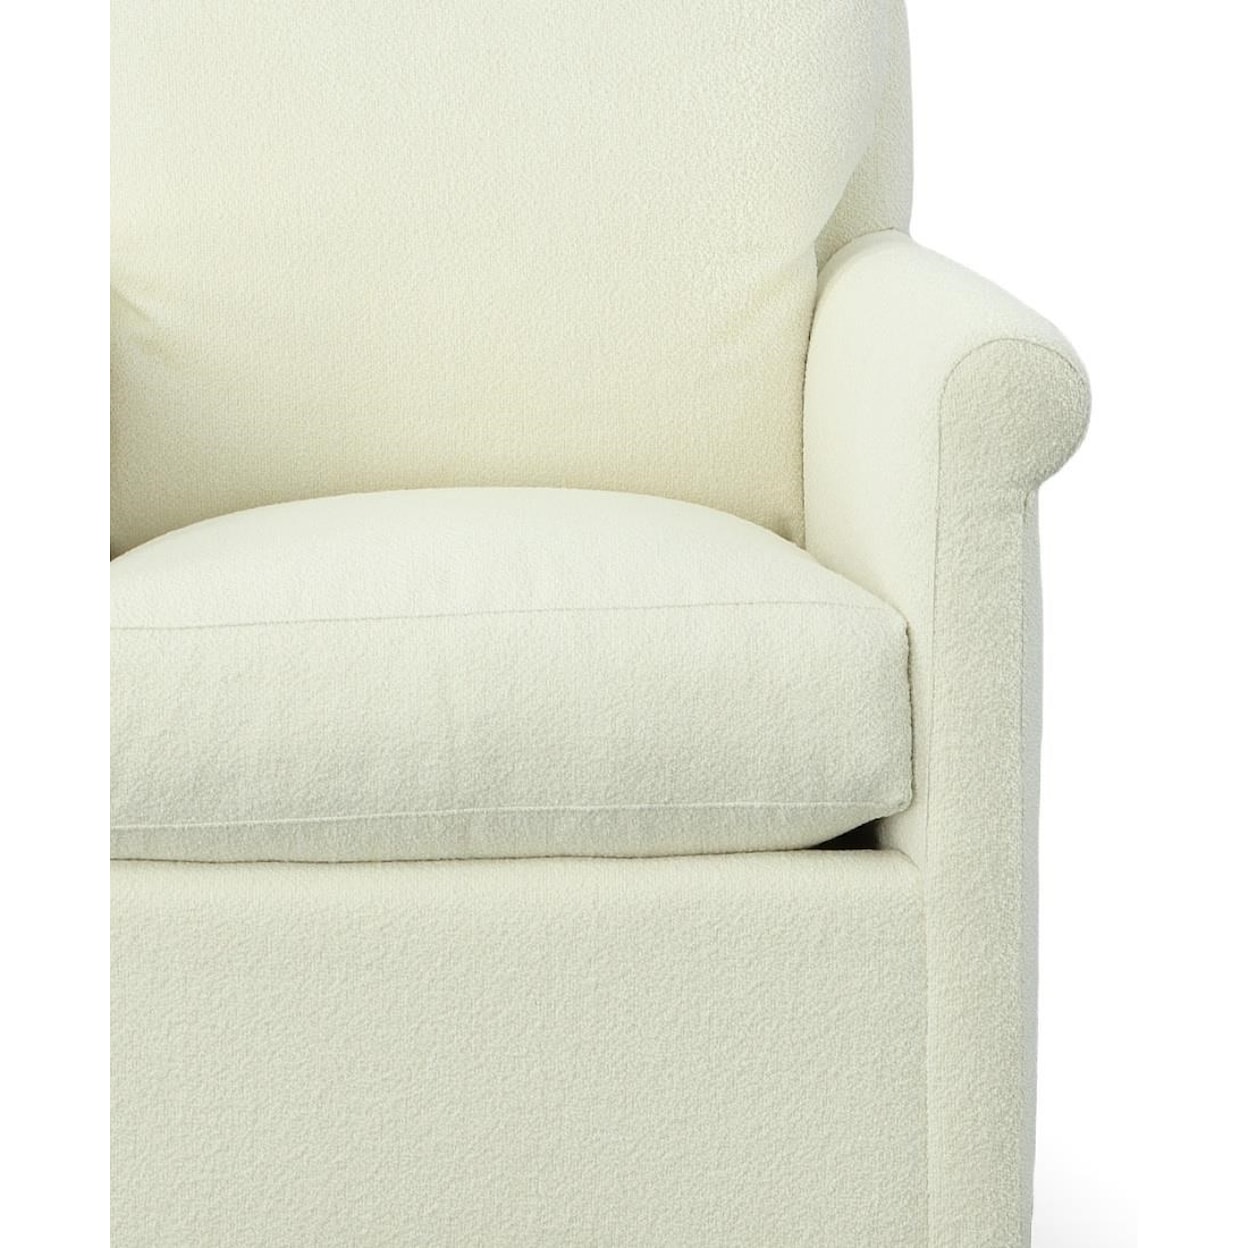 Vanguard Furniture Accent Chairs Gwynn Swivel Chair